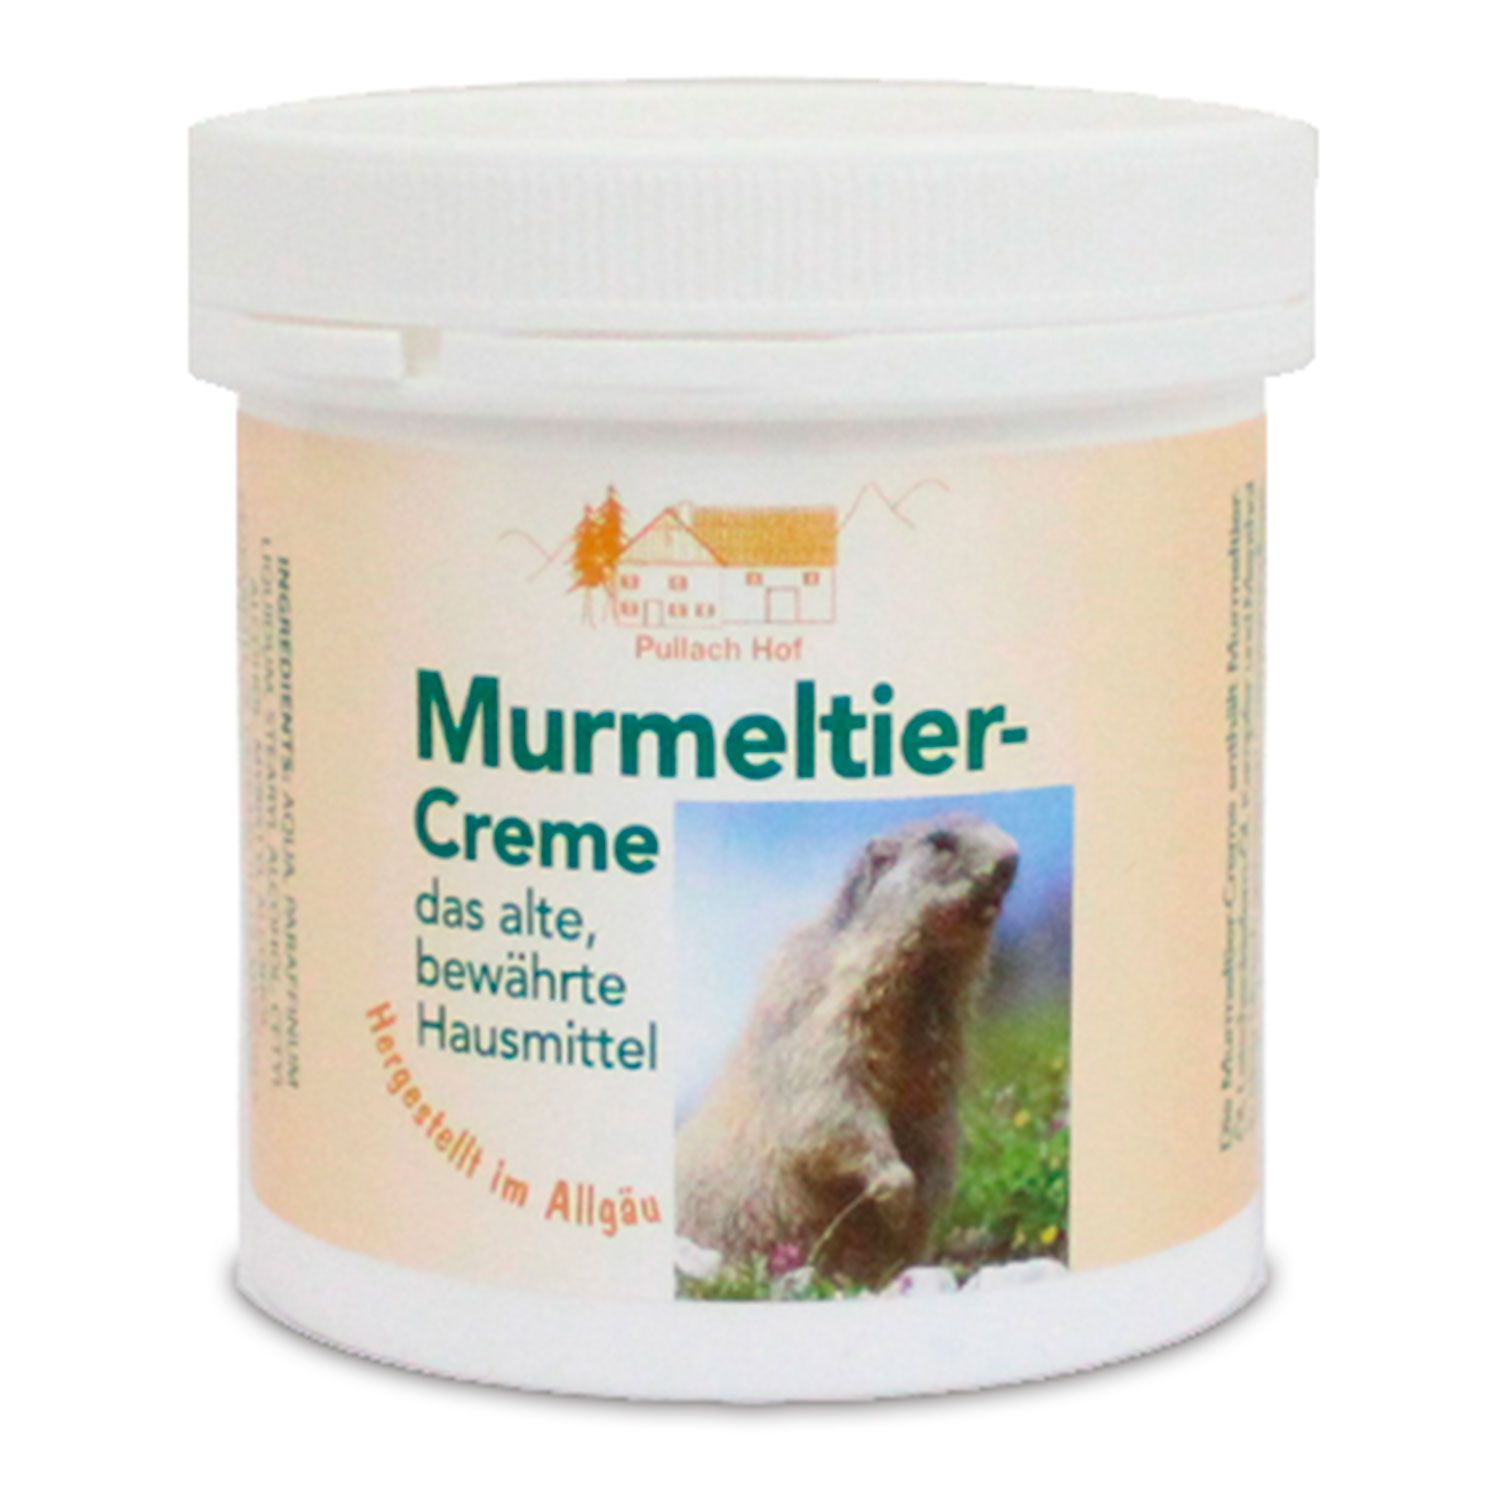 Murmeltier-Creme